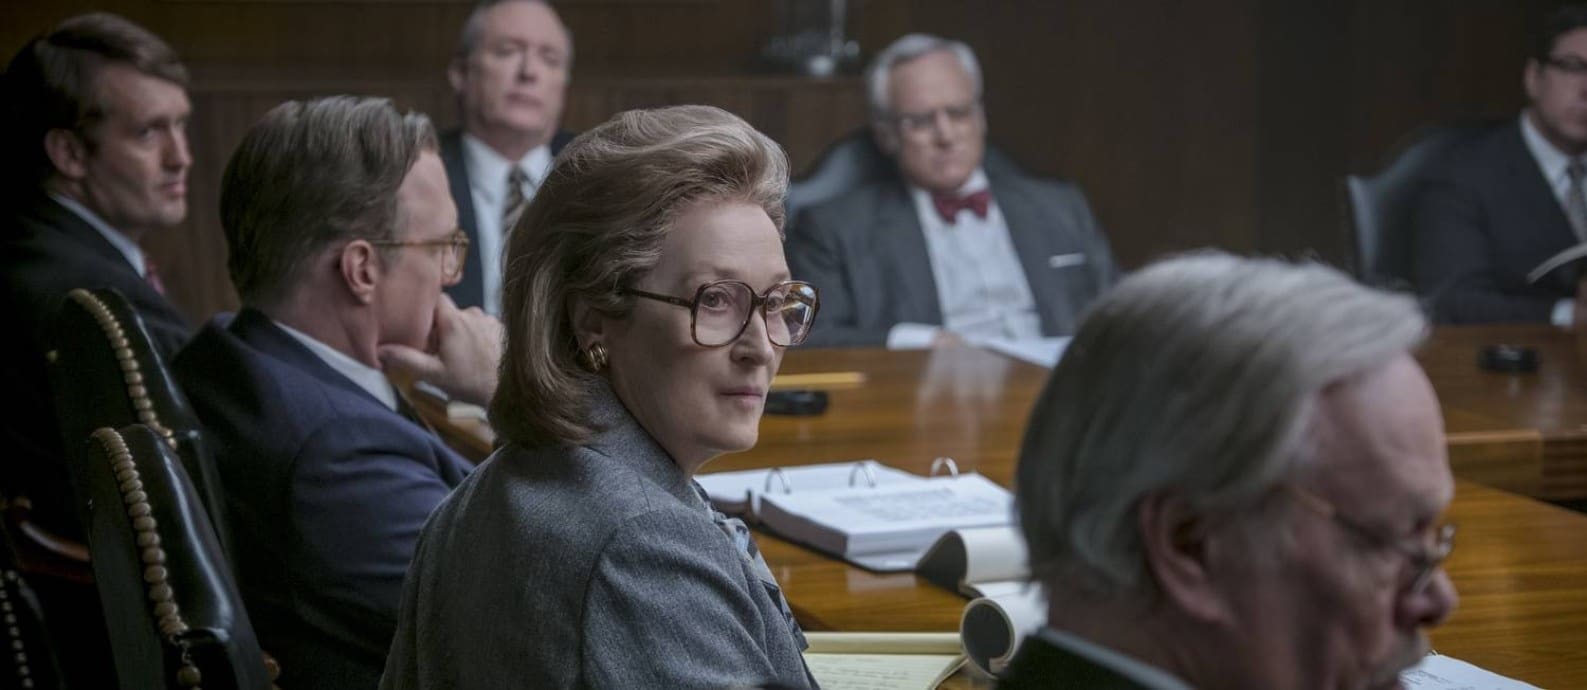 revistapazes.com - Agora na Netflix: obra-prima de Steven Spielberg com Meryl Streep e Tom Hanks hipnotiza desde o 1º minuto